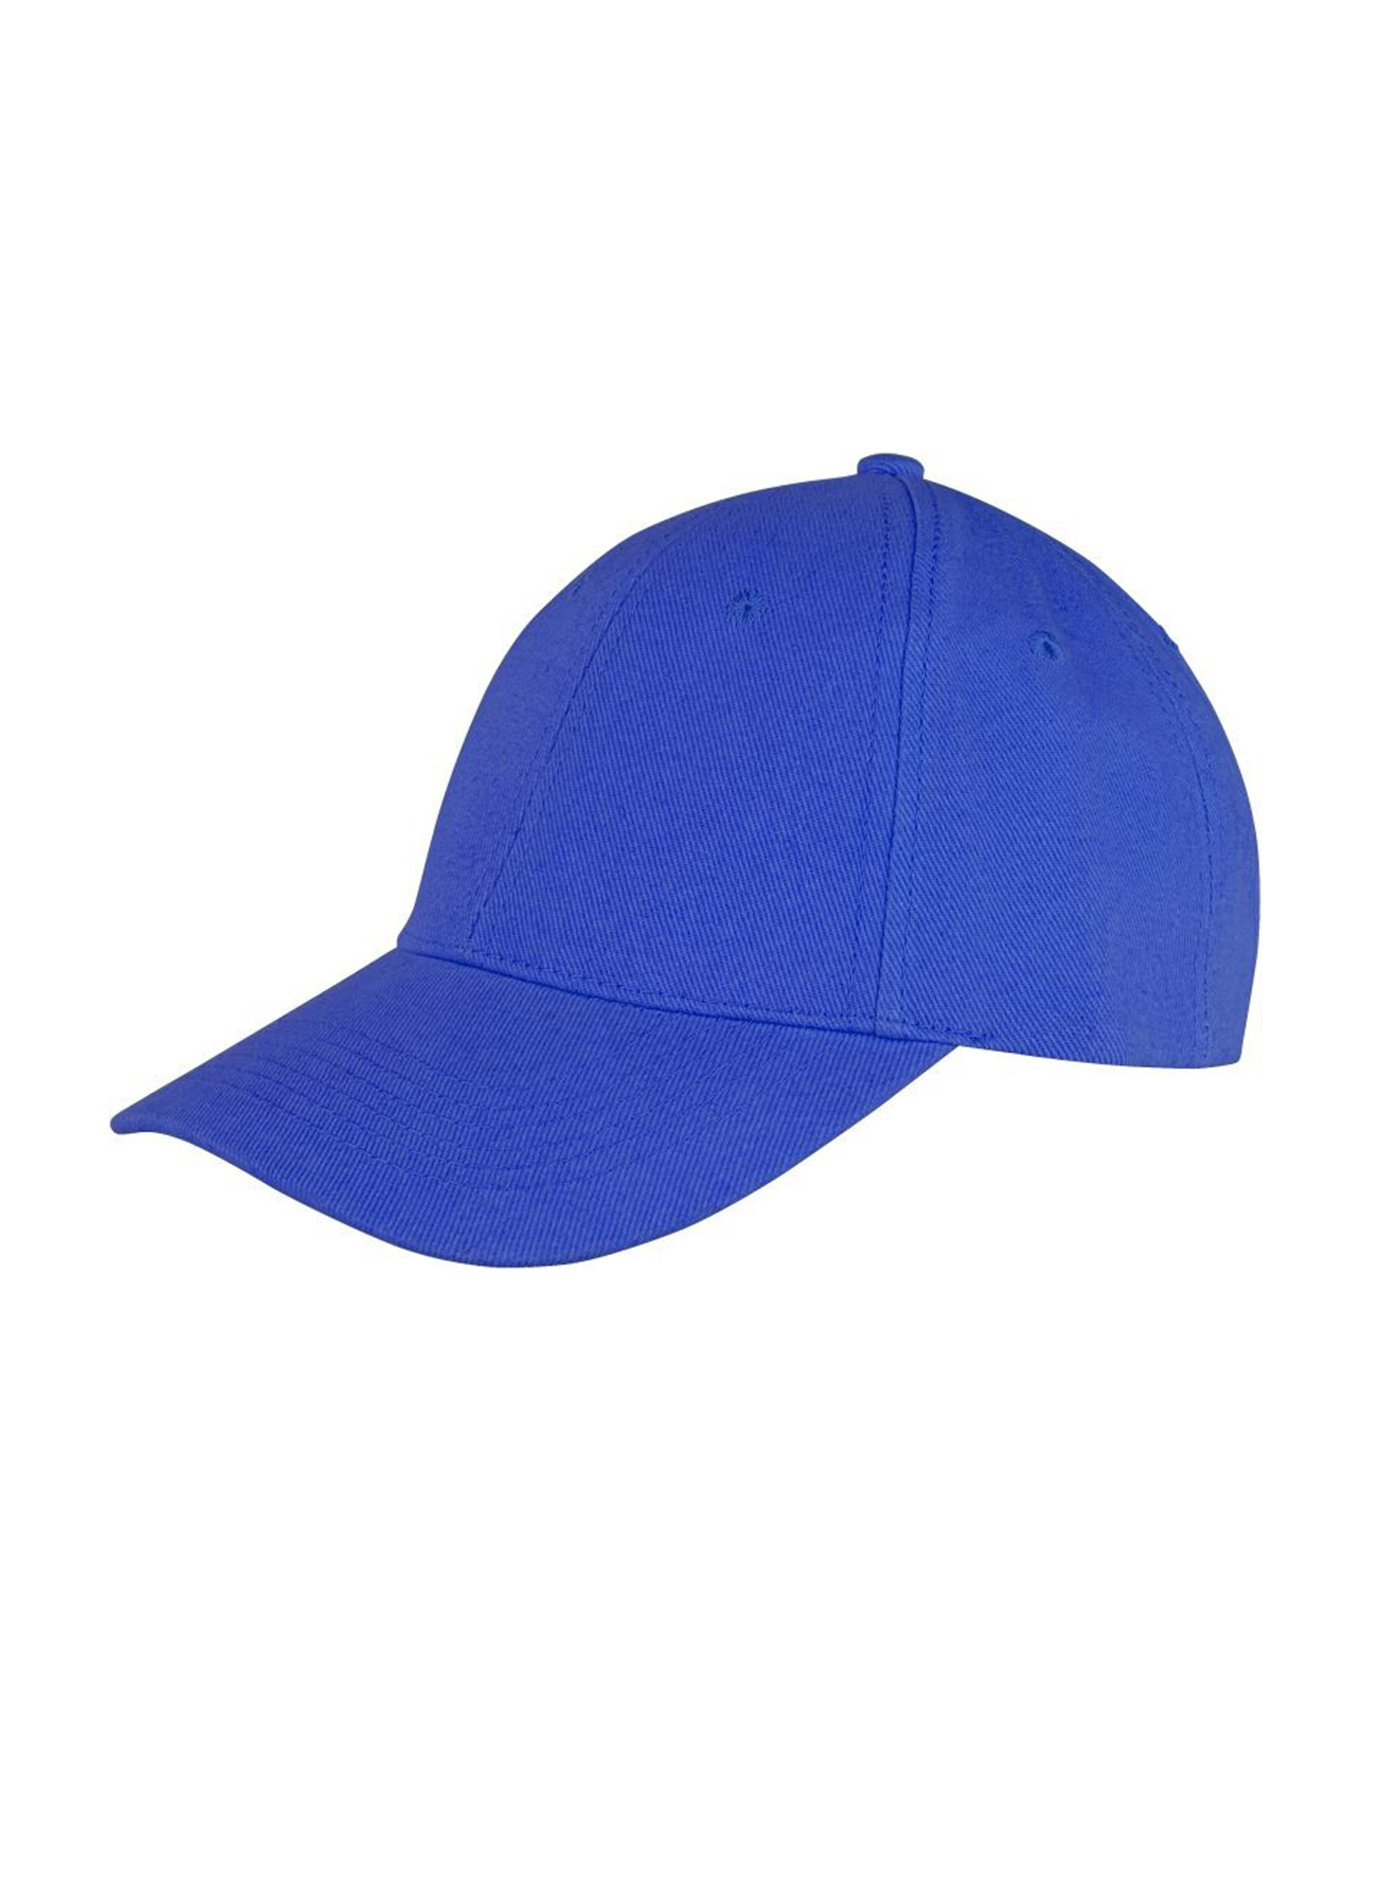 Kšiltovka Result headwear s nízkým profilem - Královská modrá univerzal